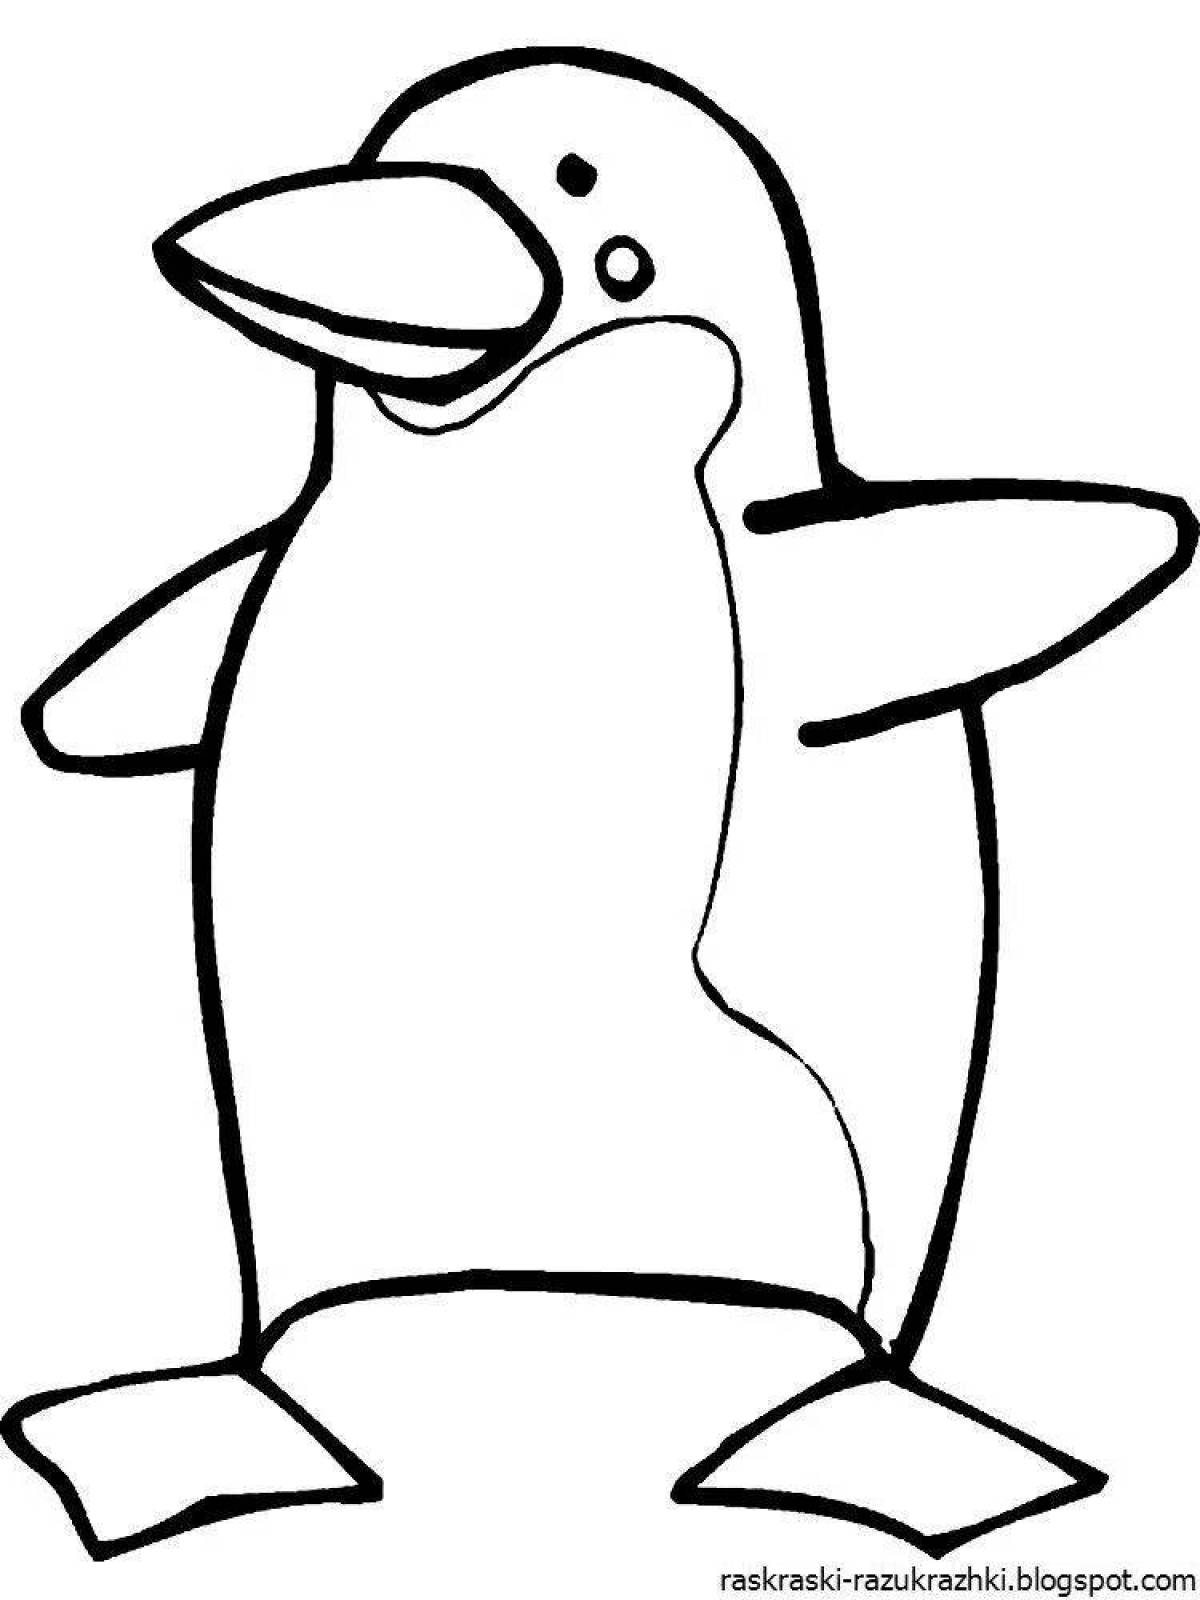 Раскраски с пингвинами - распечатать бесплатно